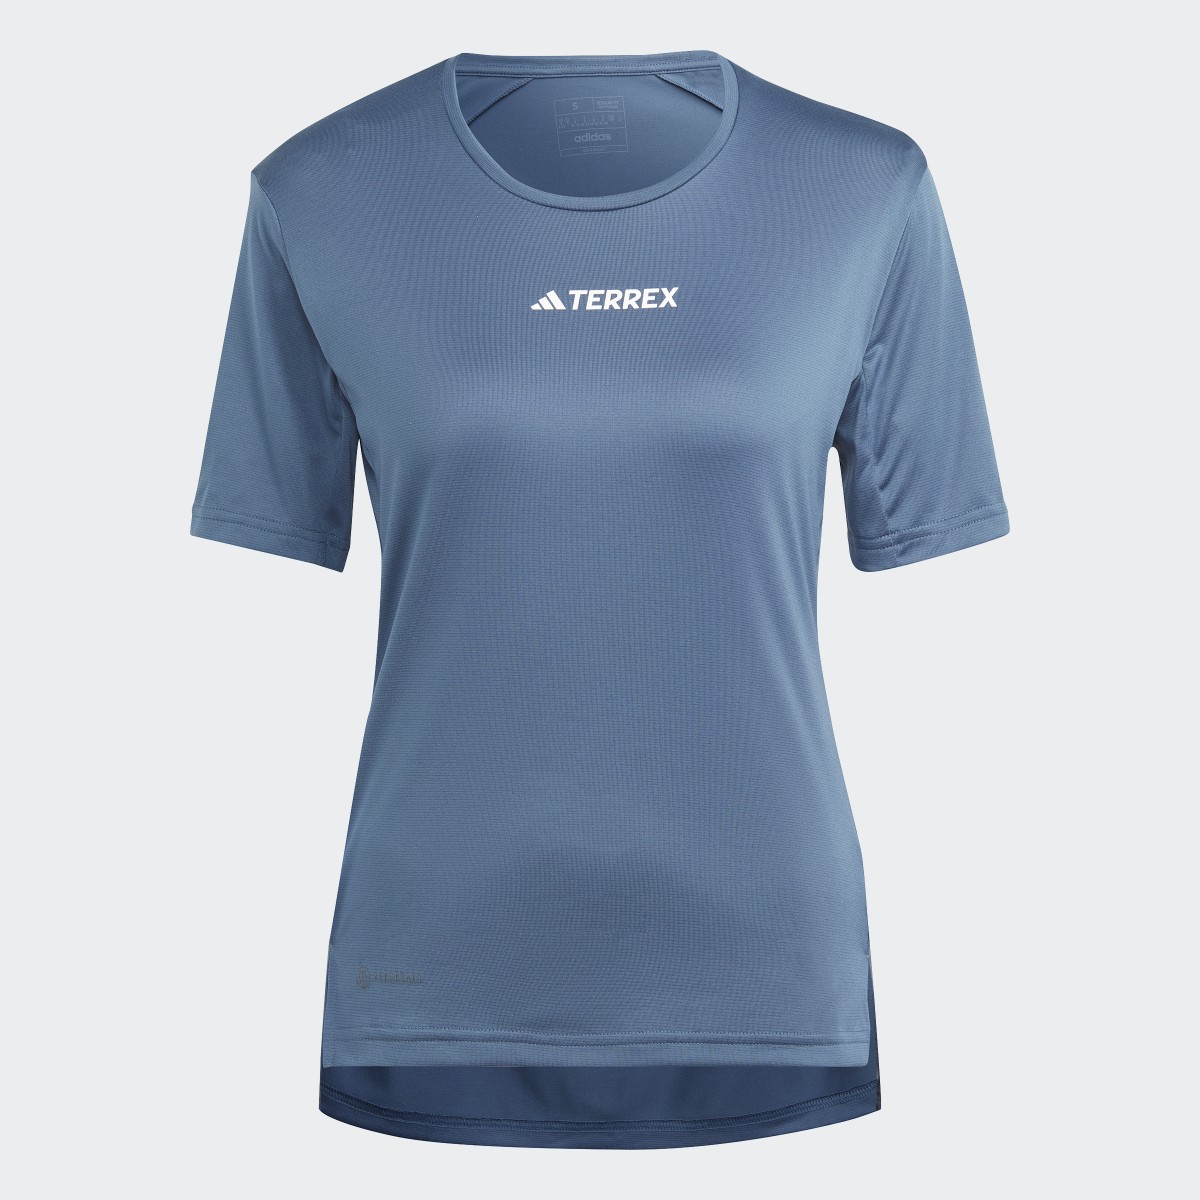 Adidas T-shirt Terrex Multi. 5